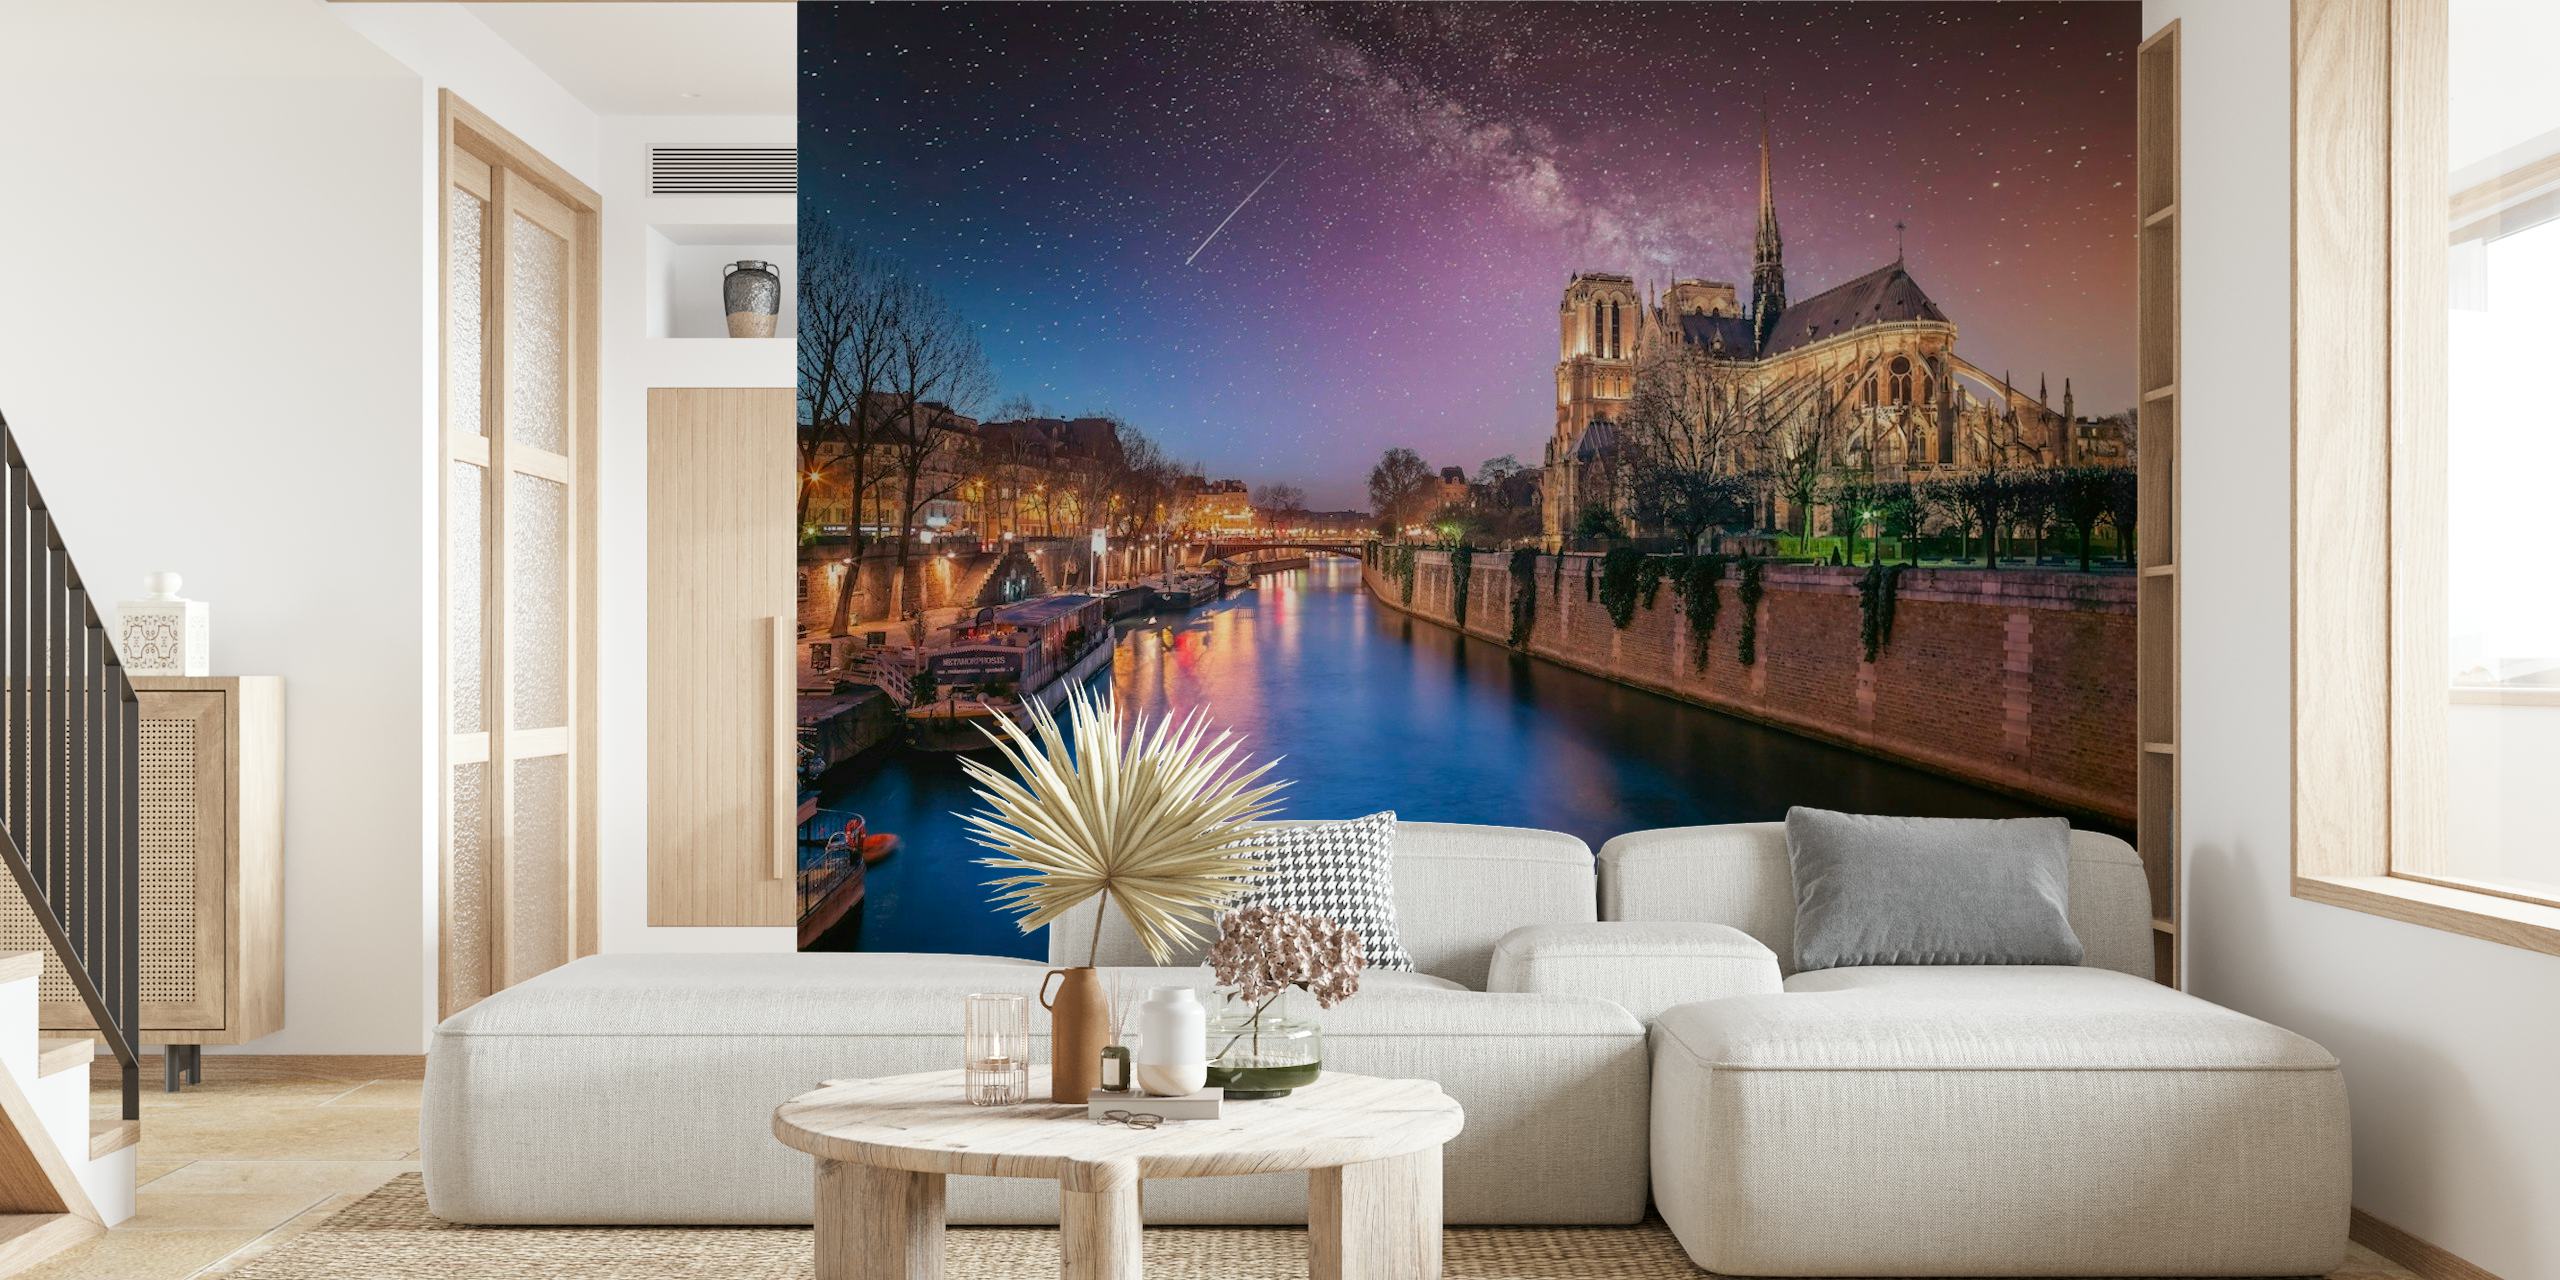 Katedrala Notre-Dame naspram zvjezdanog noćnog neba s rijekom Seine u prvom planu.